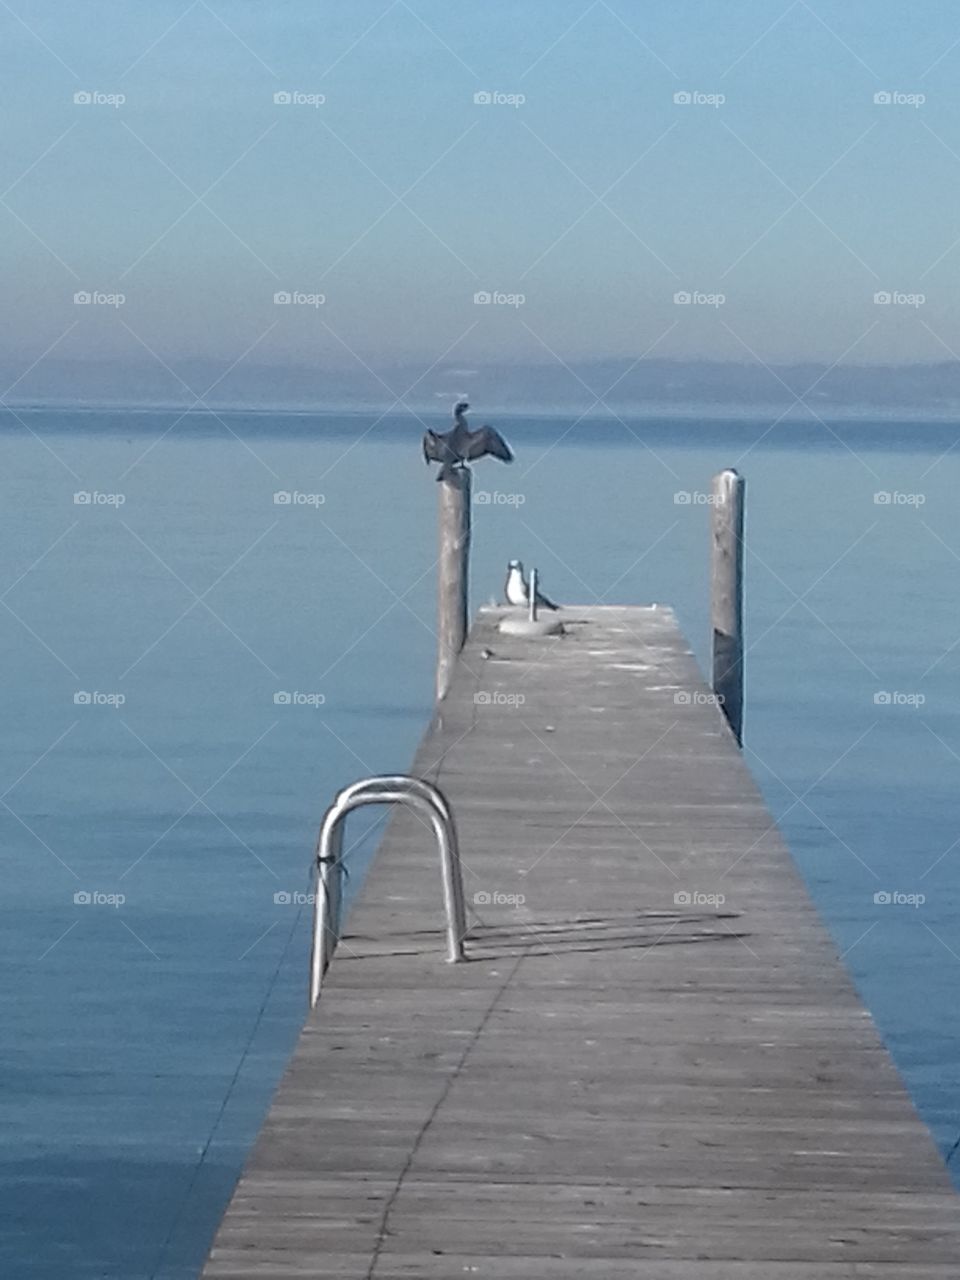 bird mates on garda lake